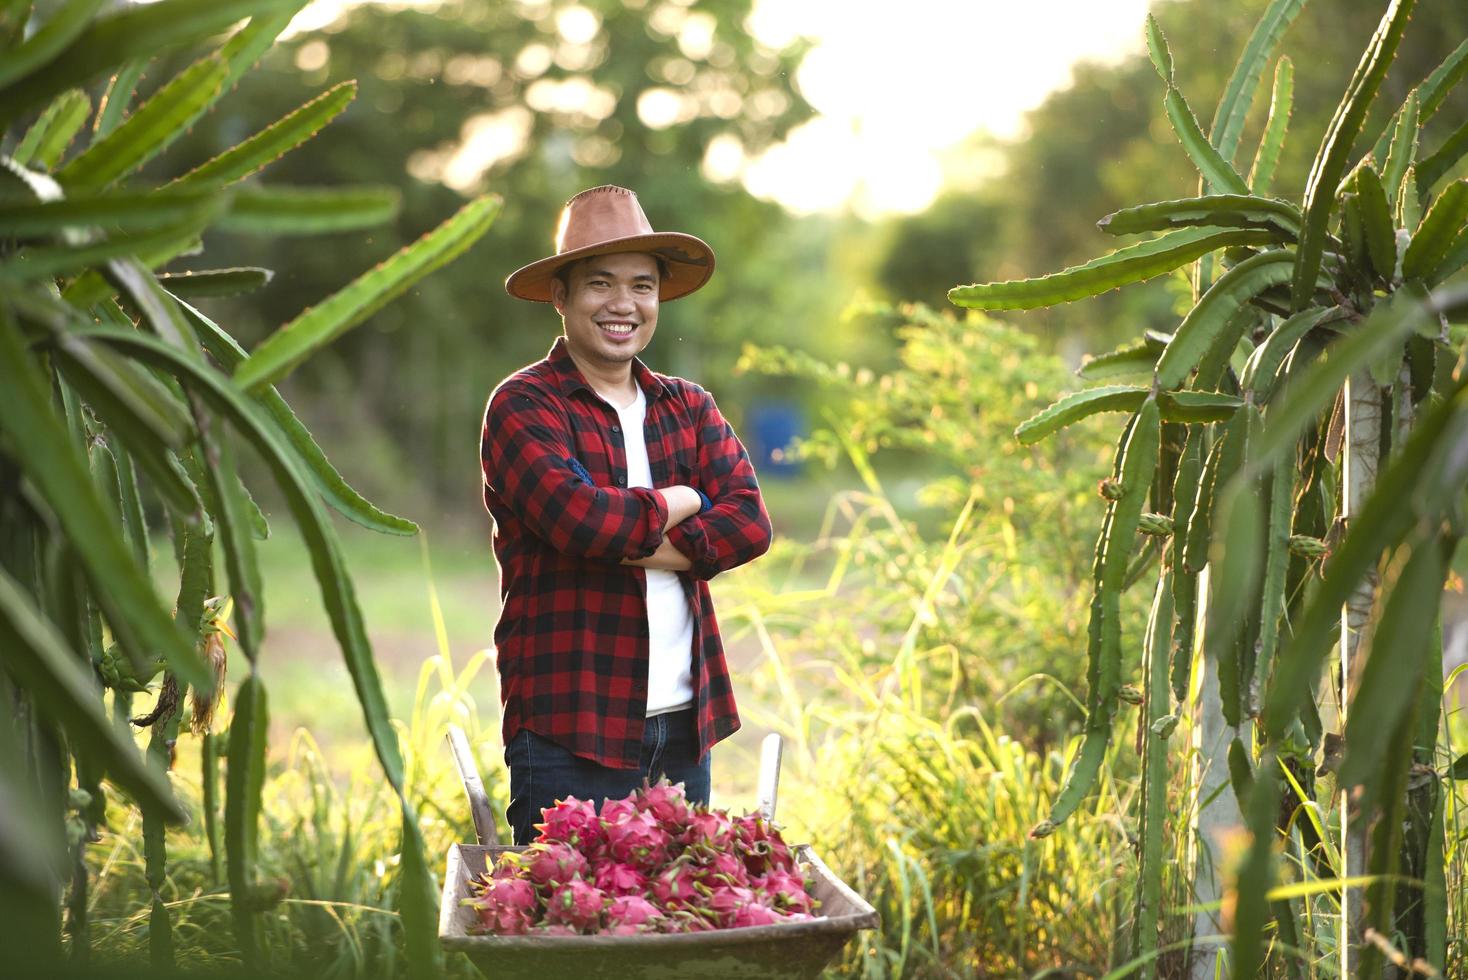 agricultores asiáticos sonrientes en plantaciones de frutas de dragón, agricultores recogiendo productos foto